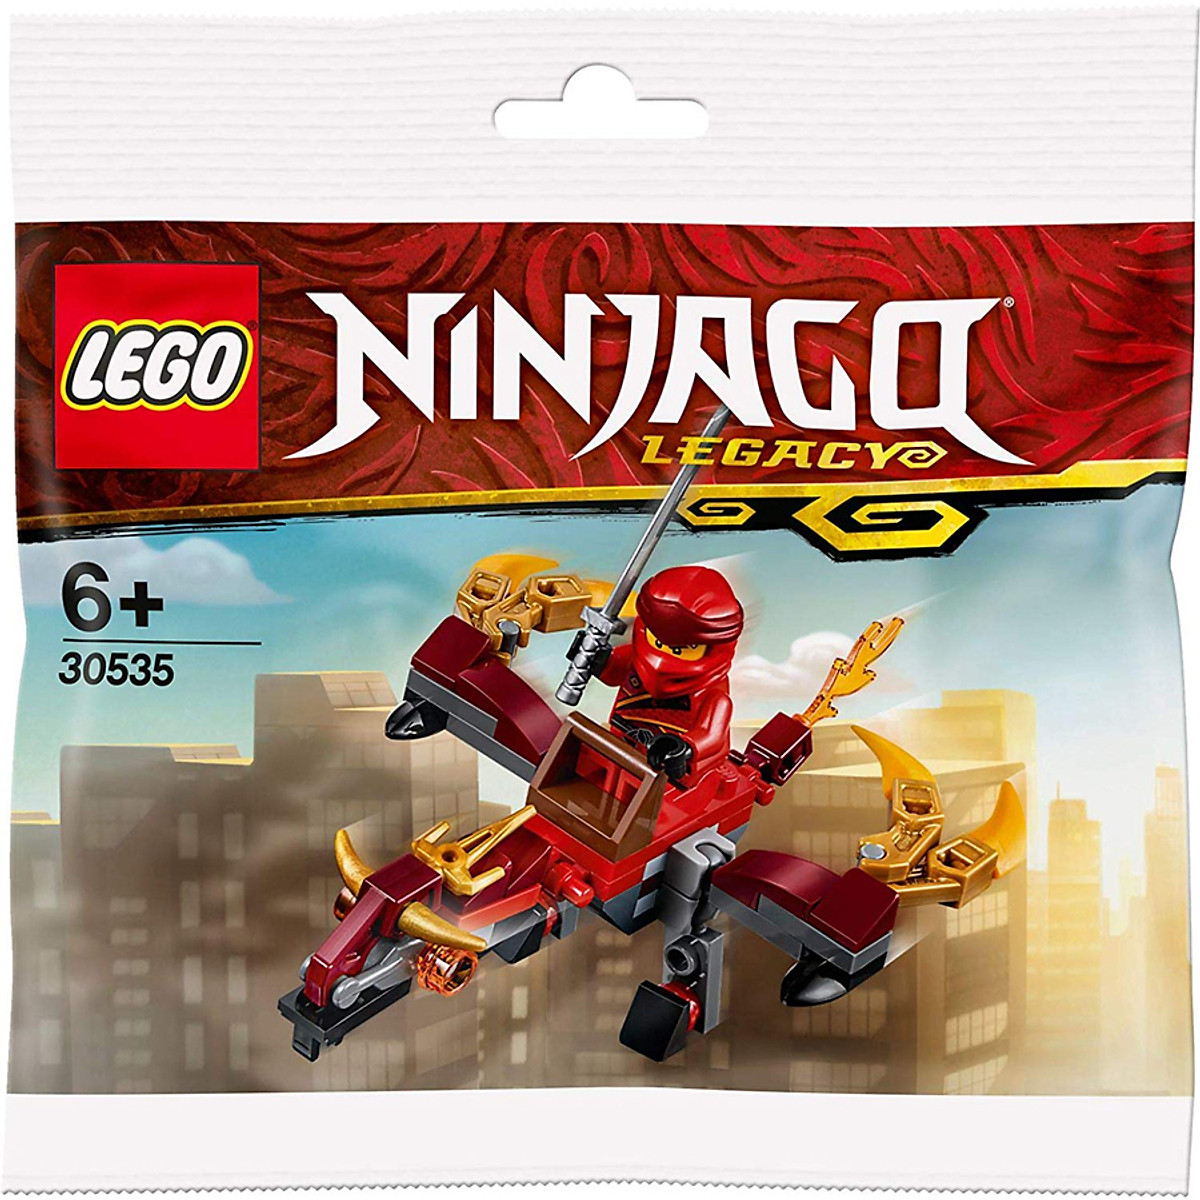 Bộ phim hoạt hình nổi tiếng của Lego Ninjago sẽ khiến bạn phấn khích với tình tiết hấp dẫn, những tình huống khó đoán và những chiến binh ninja vô cùng đáng yêu. Đặc biệt, bạn sẽ được gặp lại những nhân vật mà mình yêu thích như Kai, Jay, Cole, Zane và Nya. Hãy sẵn sàng để lạc vào thế giới tuyệt vời của Lego Ninjago.